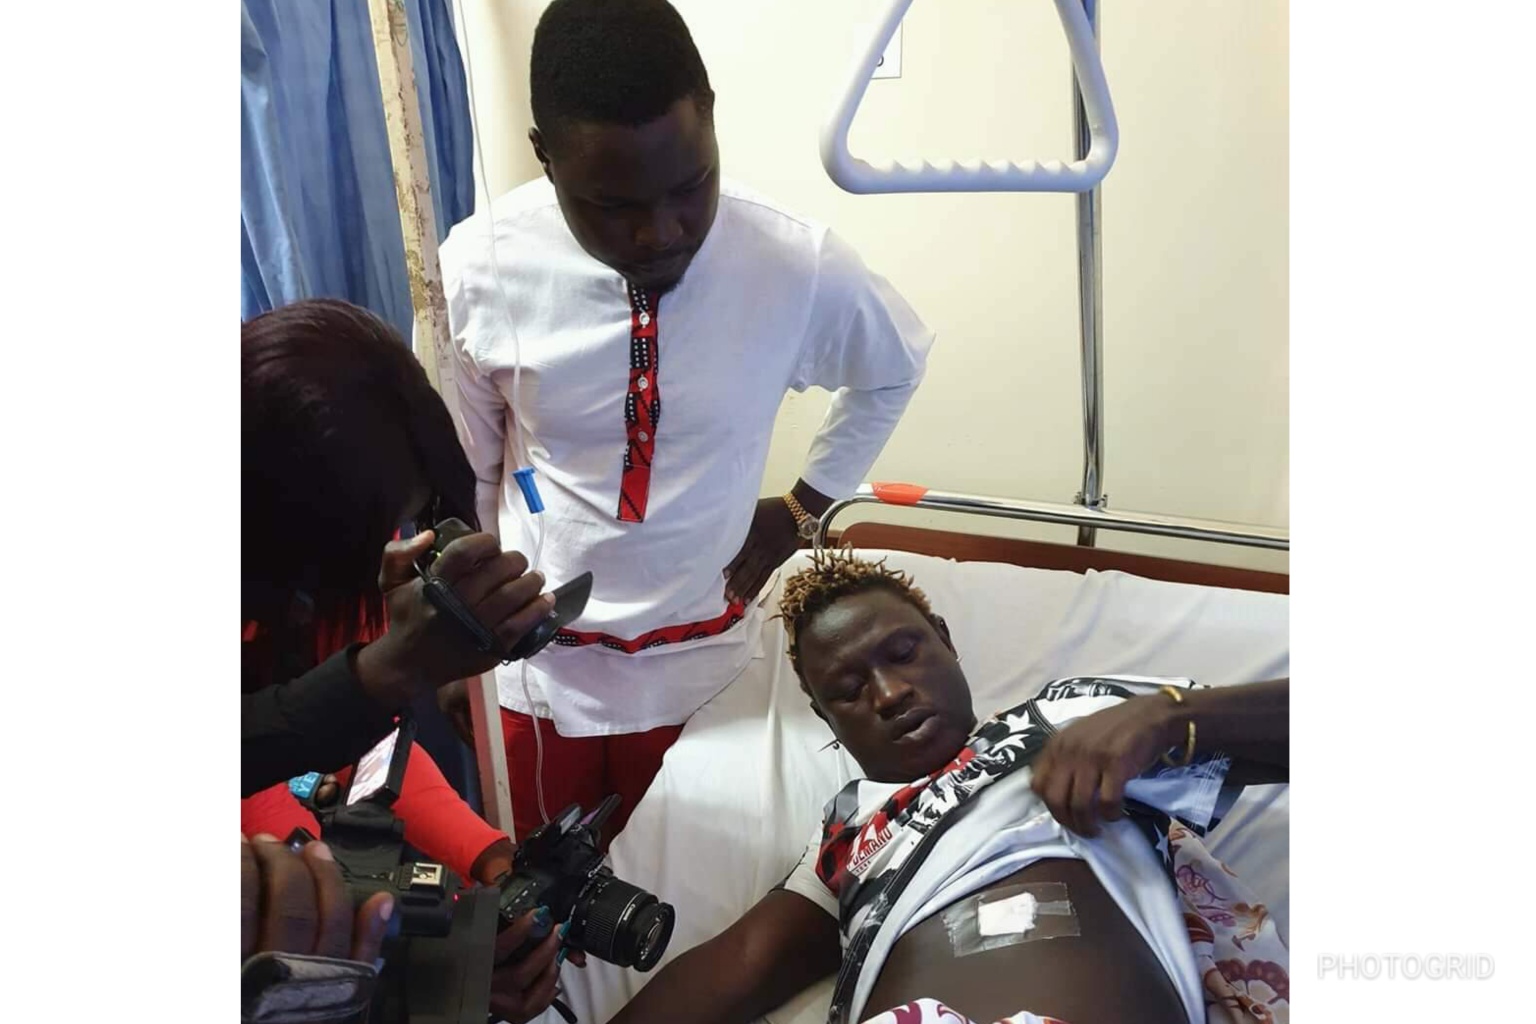 Zaake's visit at Lubaga hospital after gravity was shot